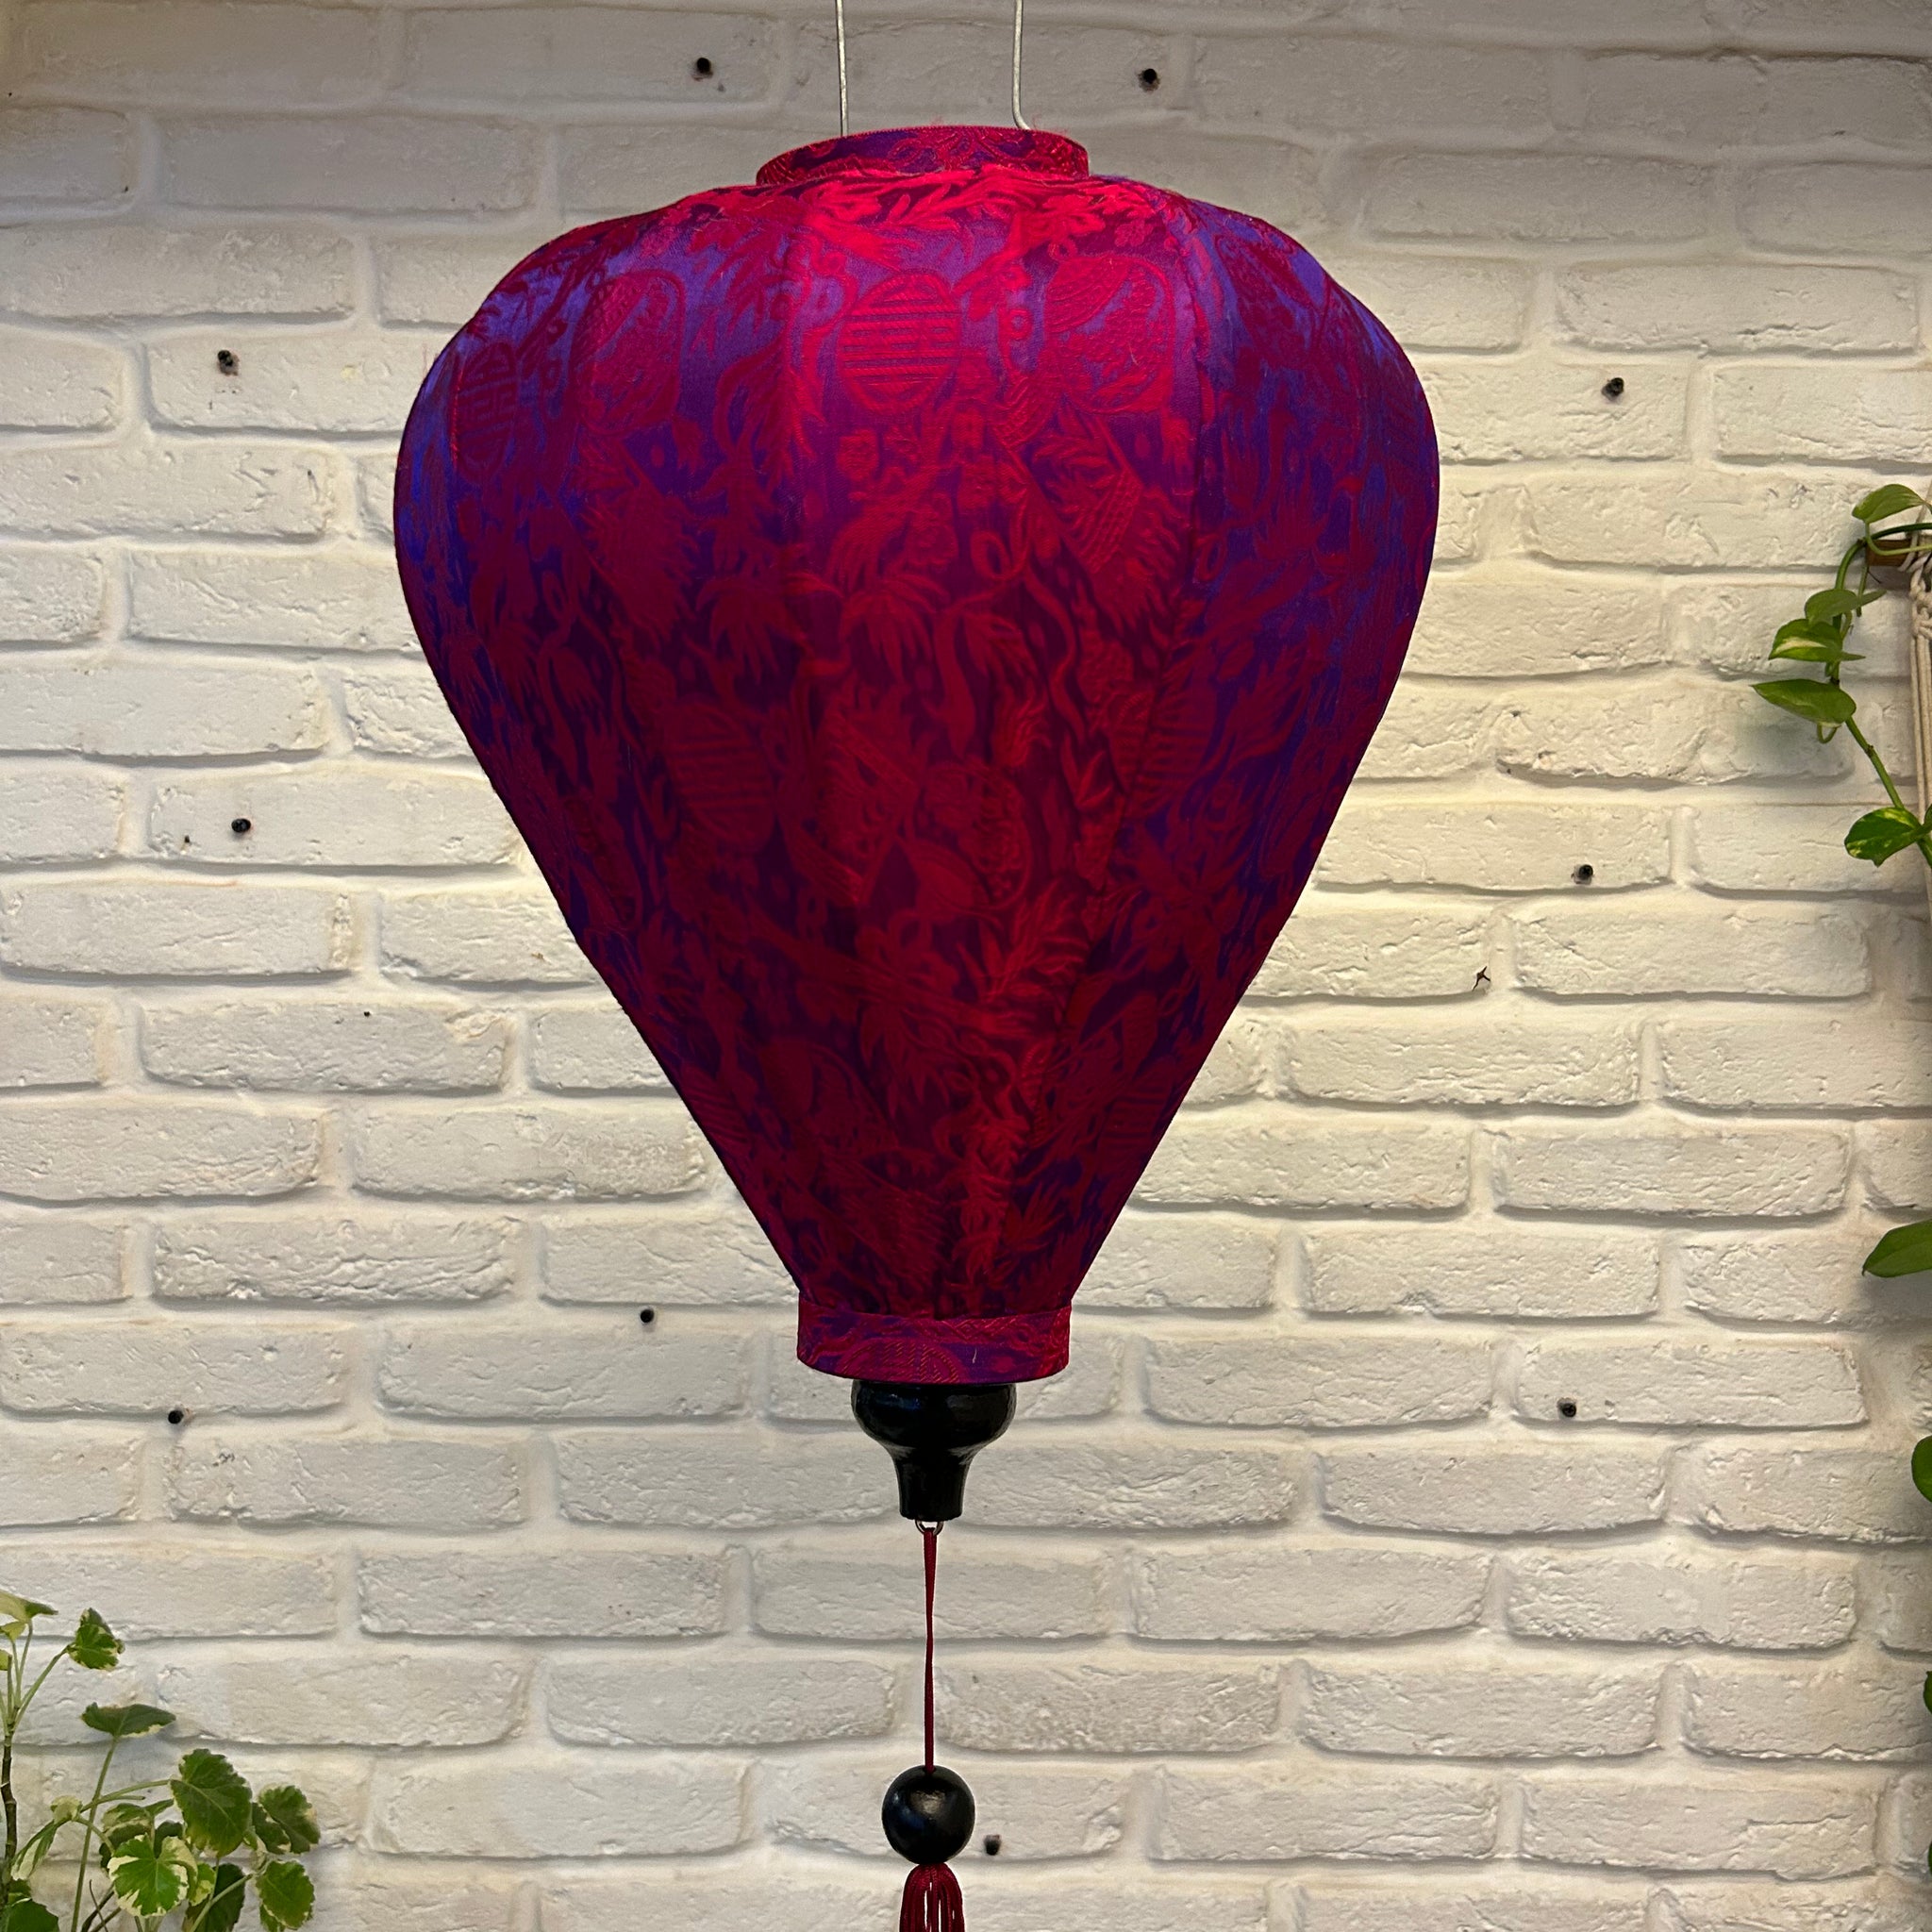 Vietnamese Silk Lanterns - Balloon Shaped Deep Pink Printed